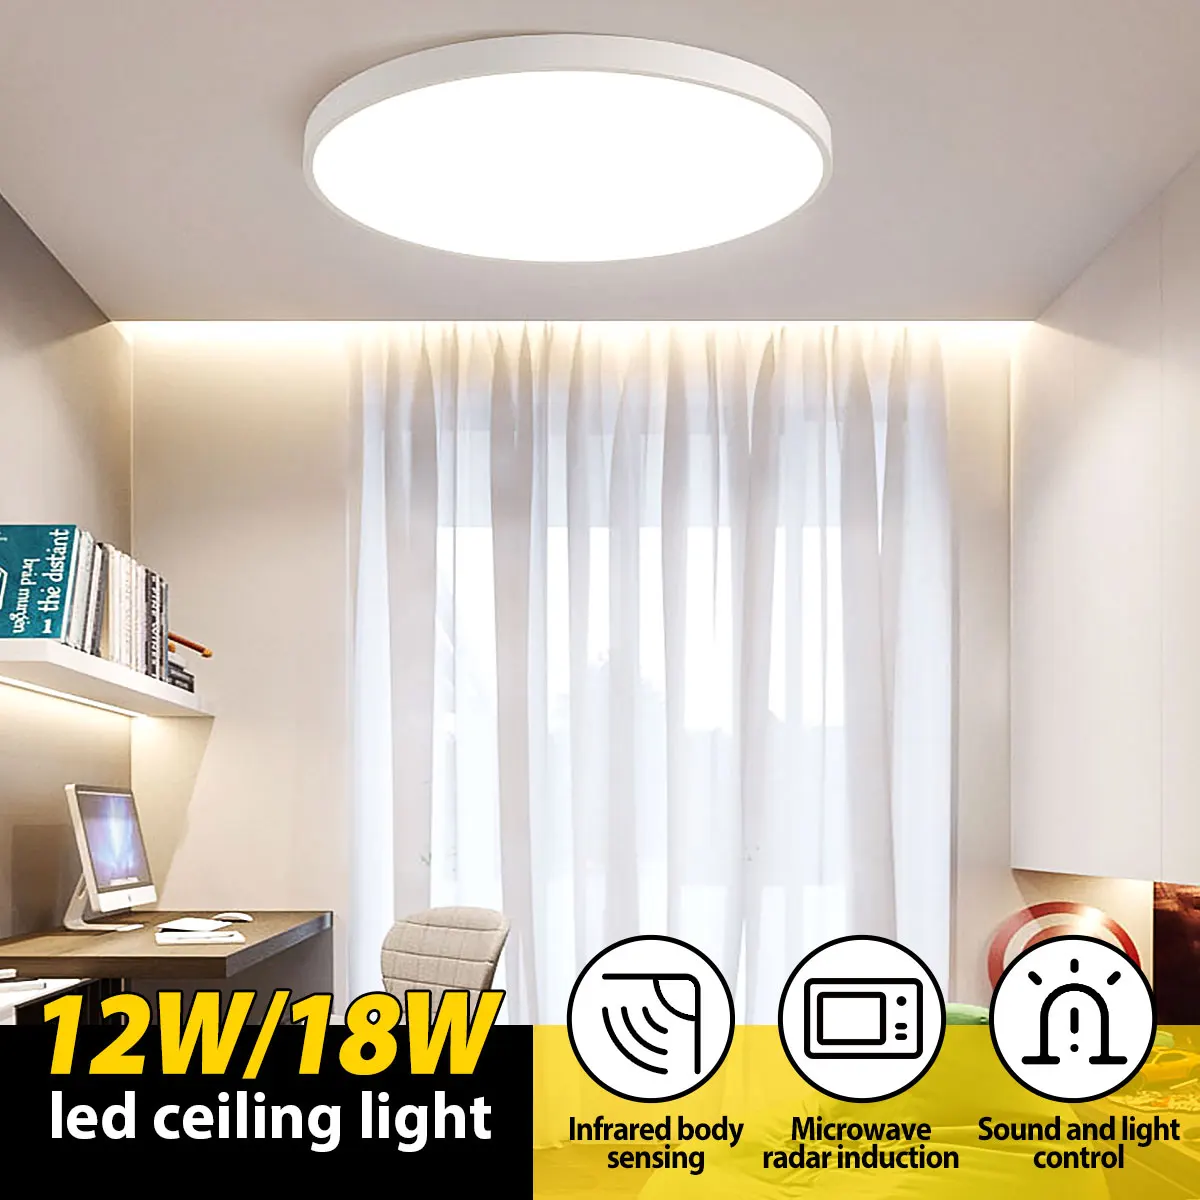 12W/18W LED PIR Sensor de Infrarrojos de la Luz de Techo empotrada en la Decoración del Hogar de la Lámpara del Cuerpo Humano, el Movimiento de Inducción + Luz de Control de Luces 1